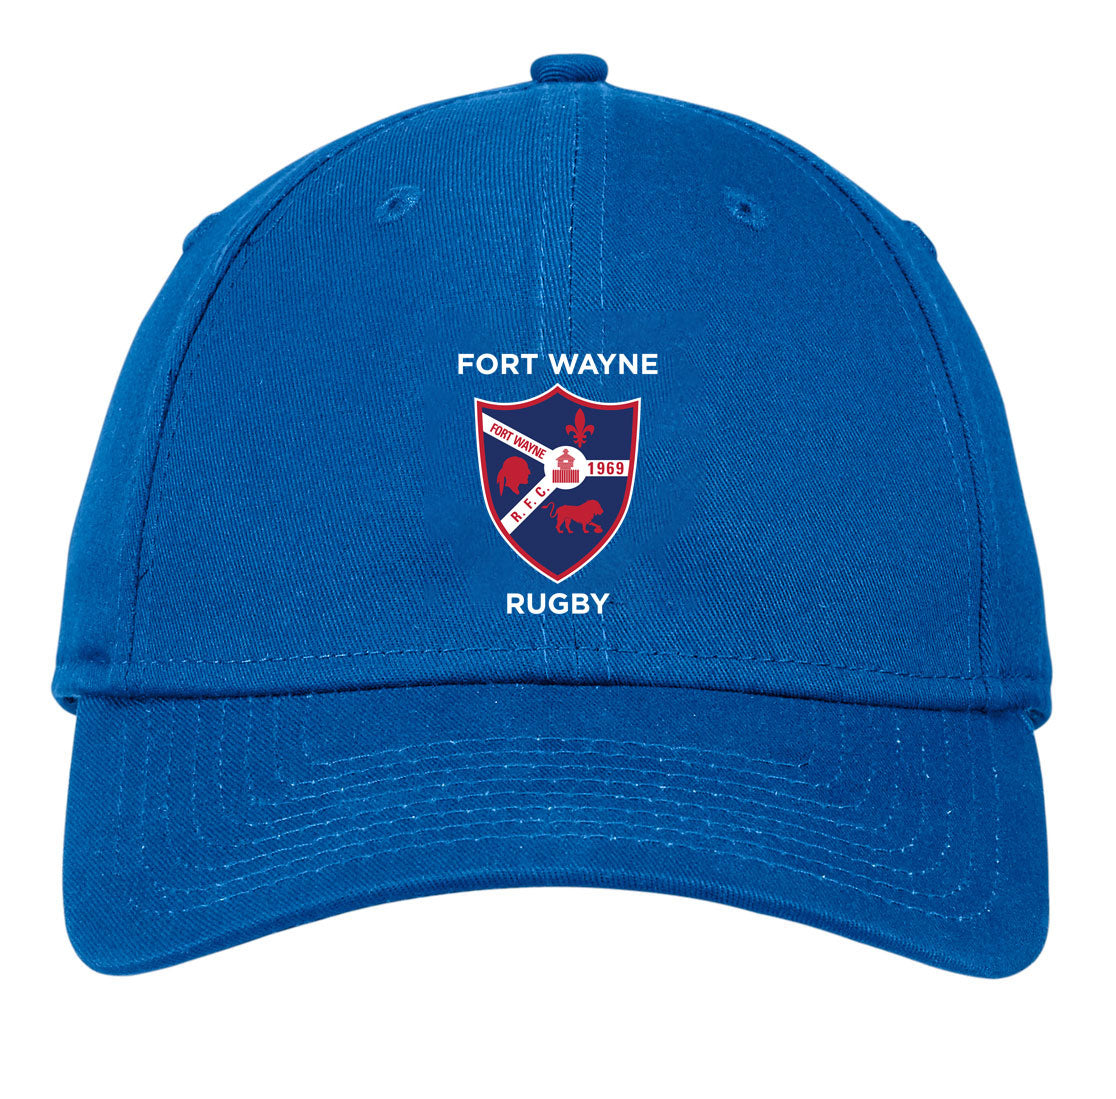 Fort Wayne Cap